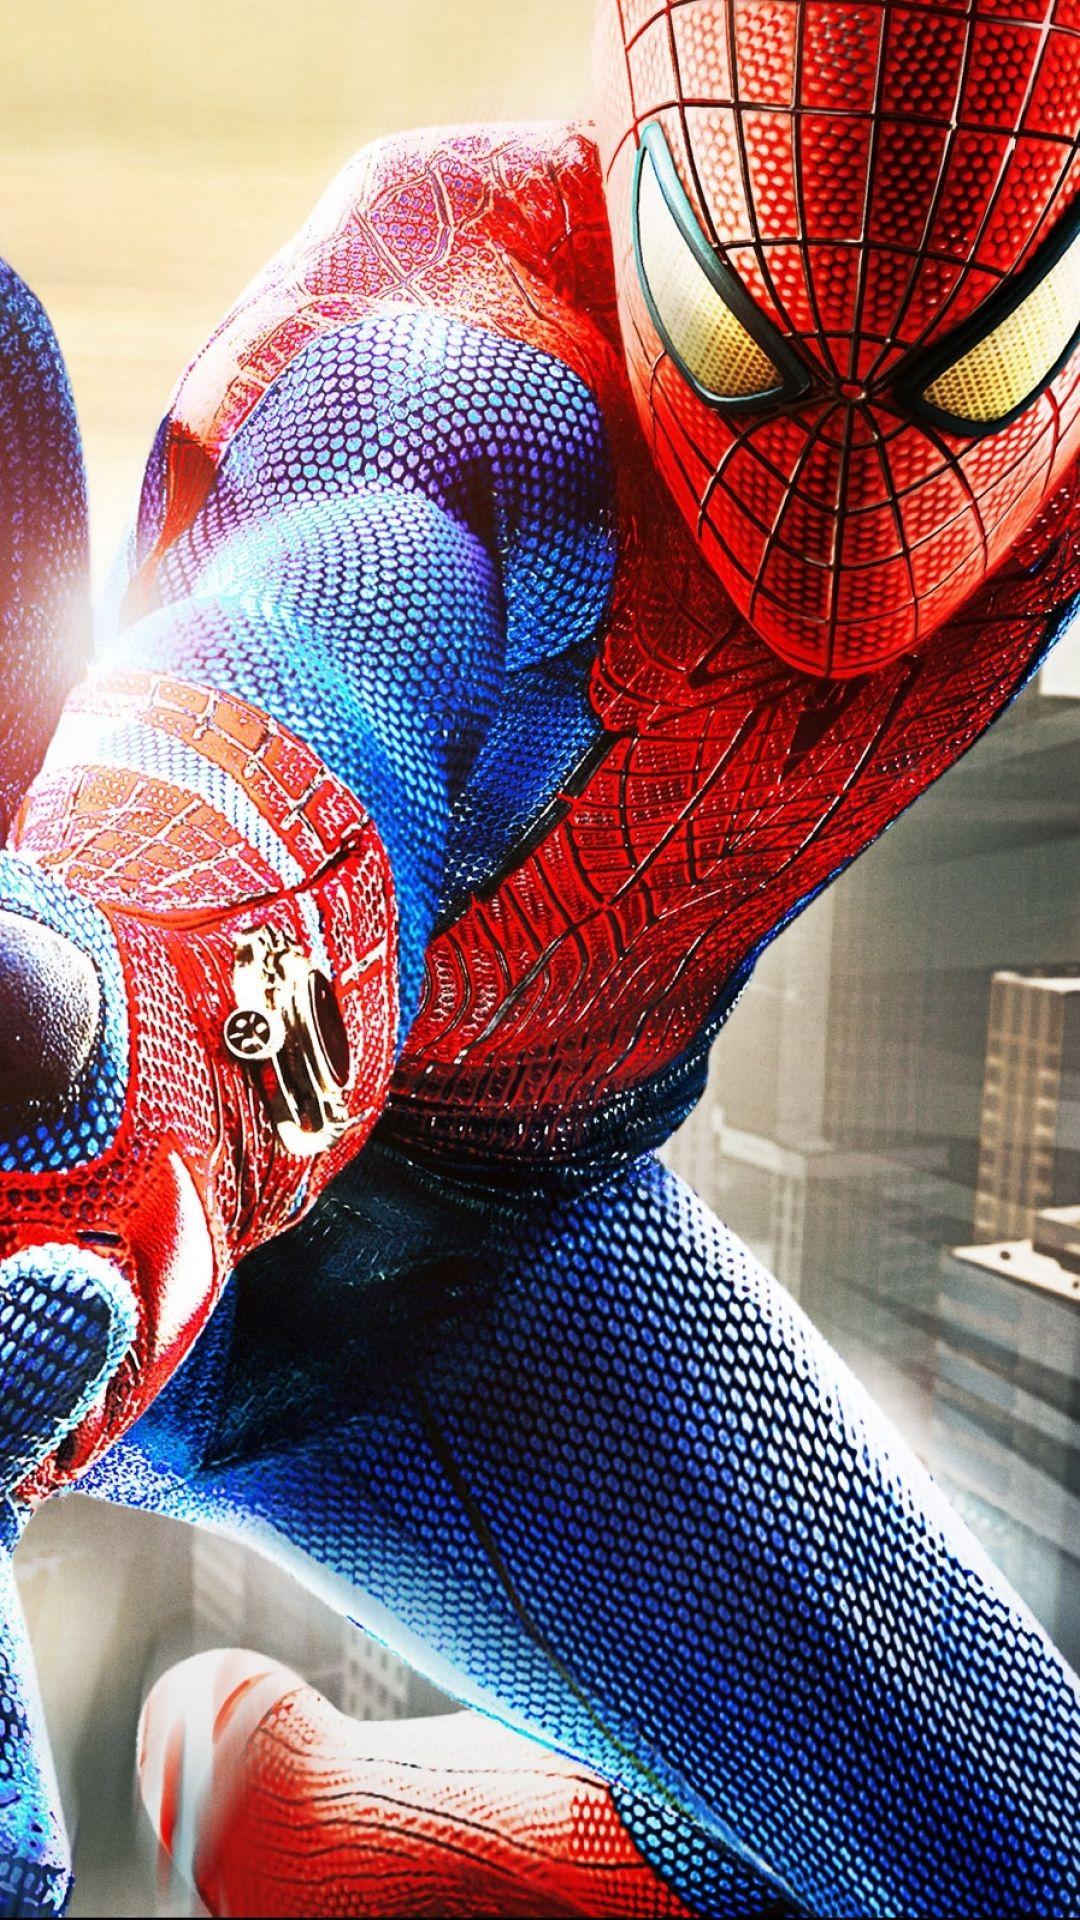 Spider-Man mobile wallpapers: Là fan của siêu anh hùng người nhện, bạn có muốn có những hình nền độc đáo, phù hợp với điện thoại của mình? Bộ sưu tập hình nền người nhện tuyệt đẹp của chúng tôi cung cấp sự lựa chọn đa dạng để bạn thỏa sức lựa chọn. Hãy chứng tỏ sự tinh tế của mình với bộ sưu tập này.